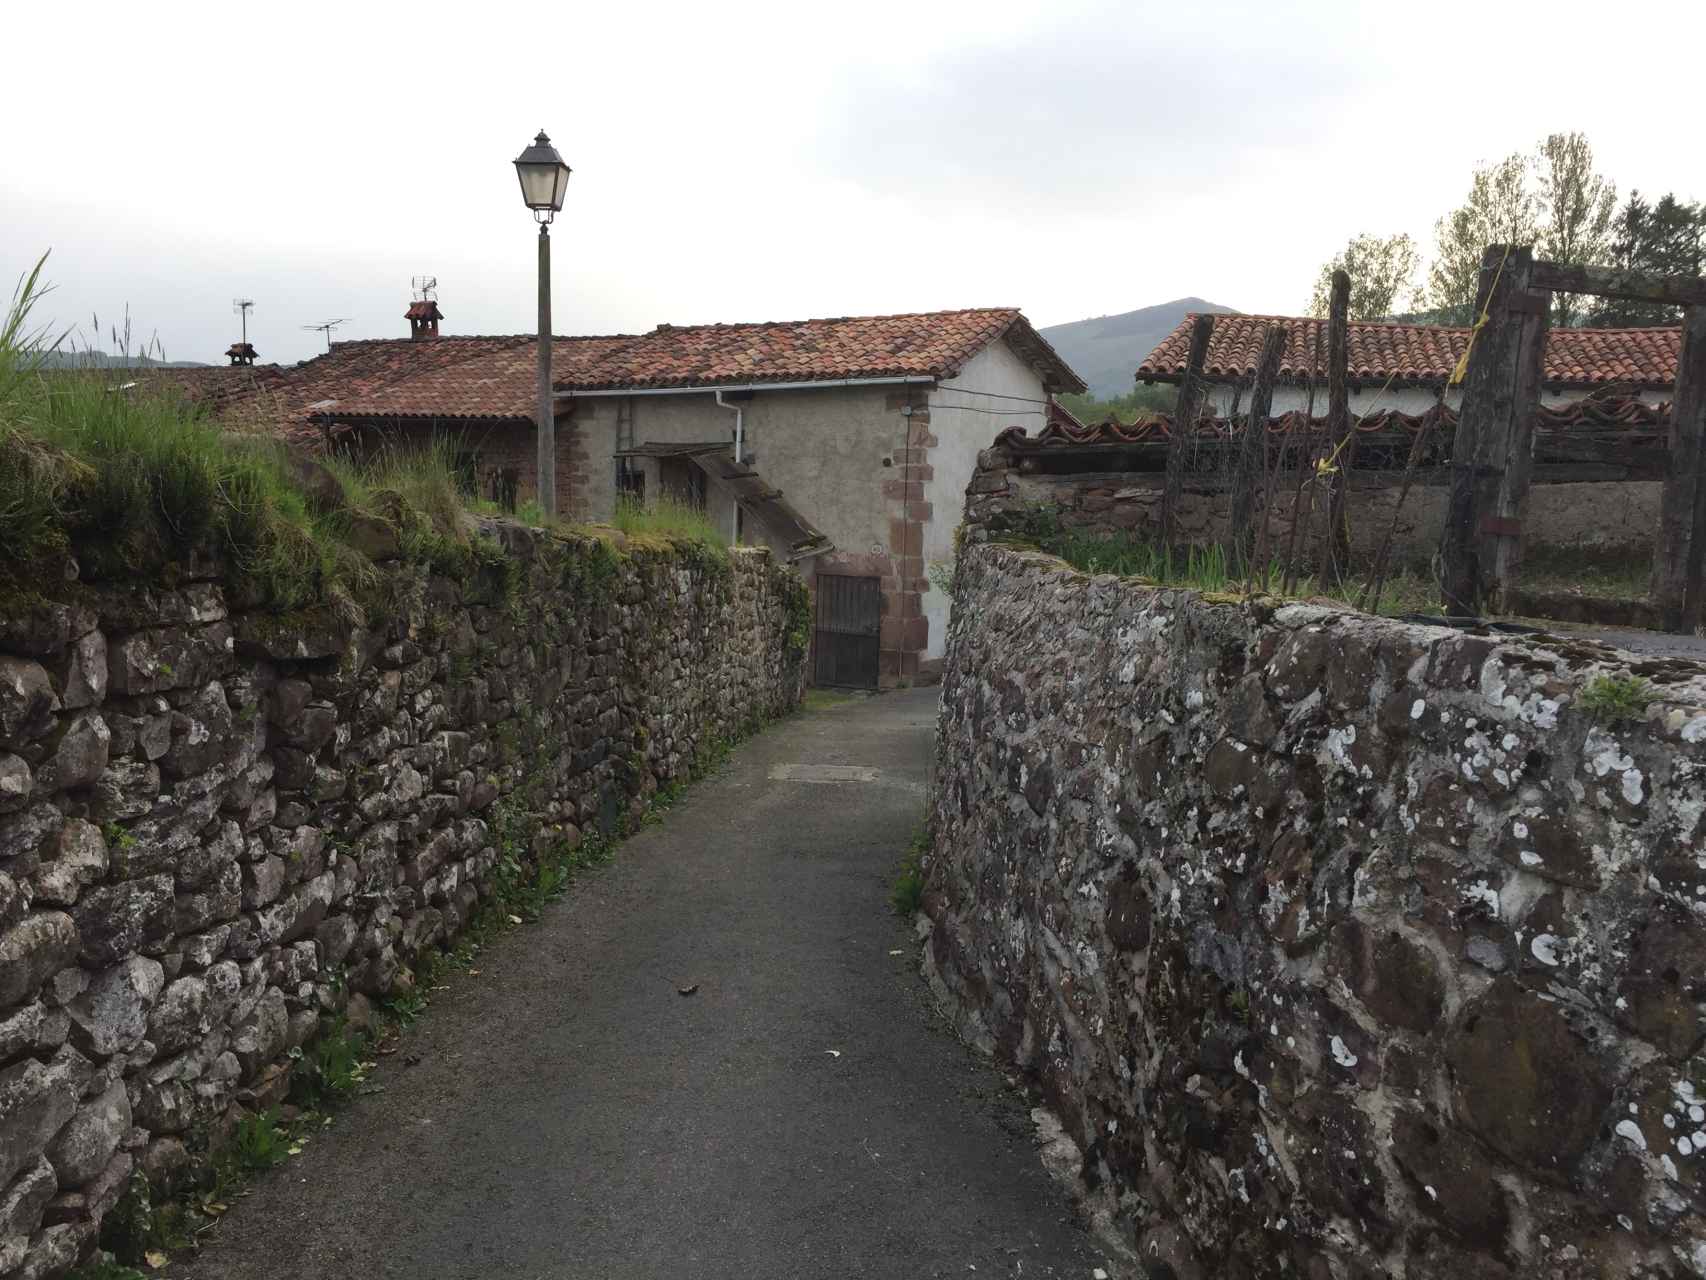 El callejón de piedra del barrio de Bozate, conocido durante siglos como el barrio maldito.